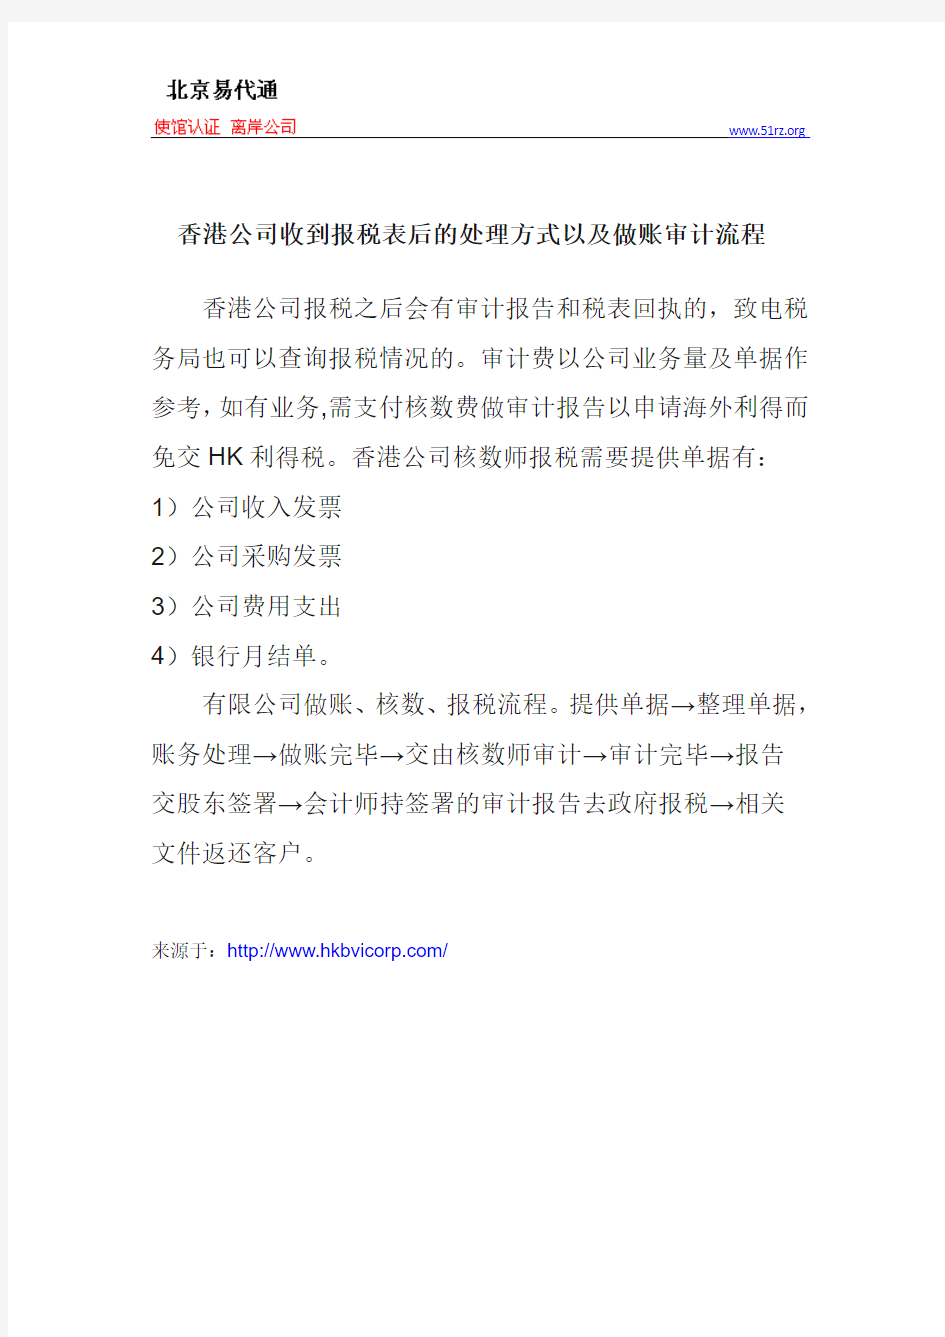 香港公司收到报税表后的处理方式以及做账审计流程